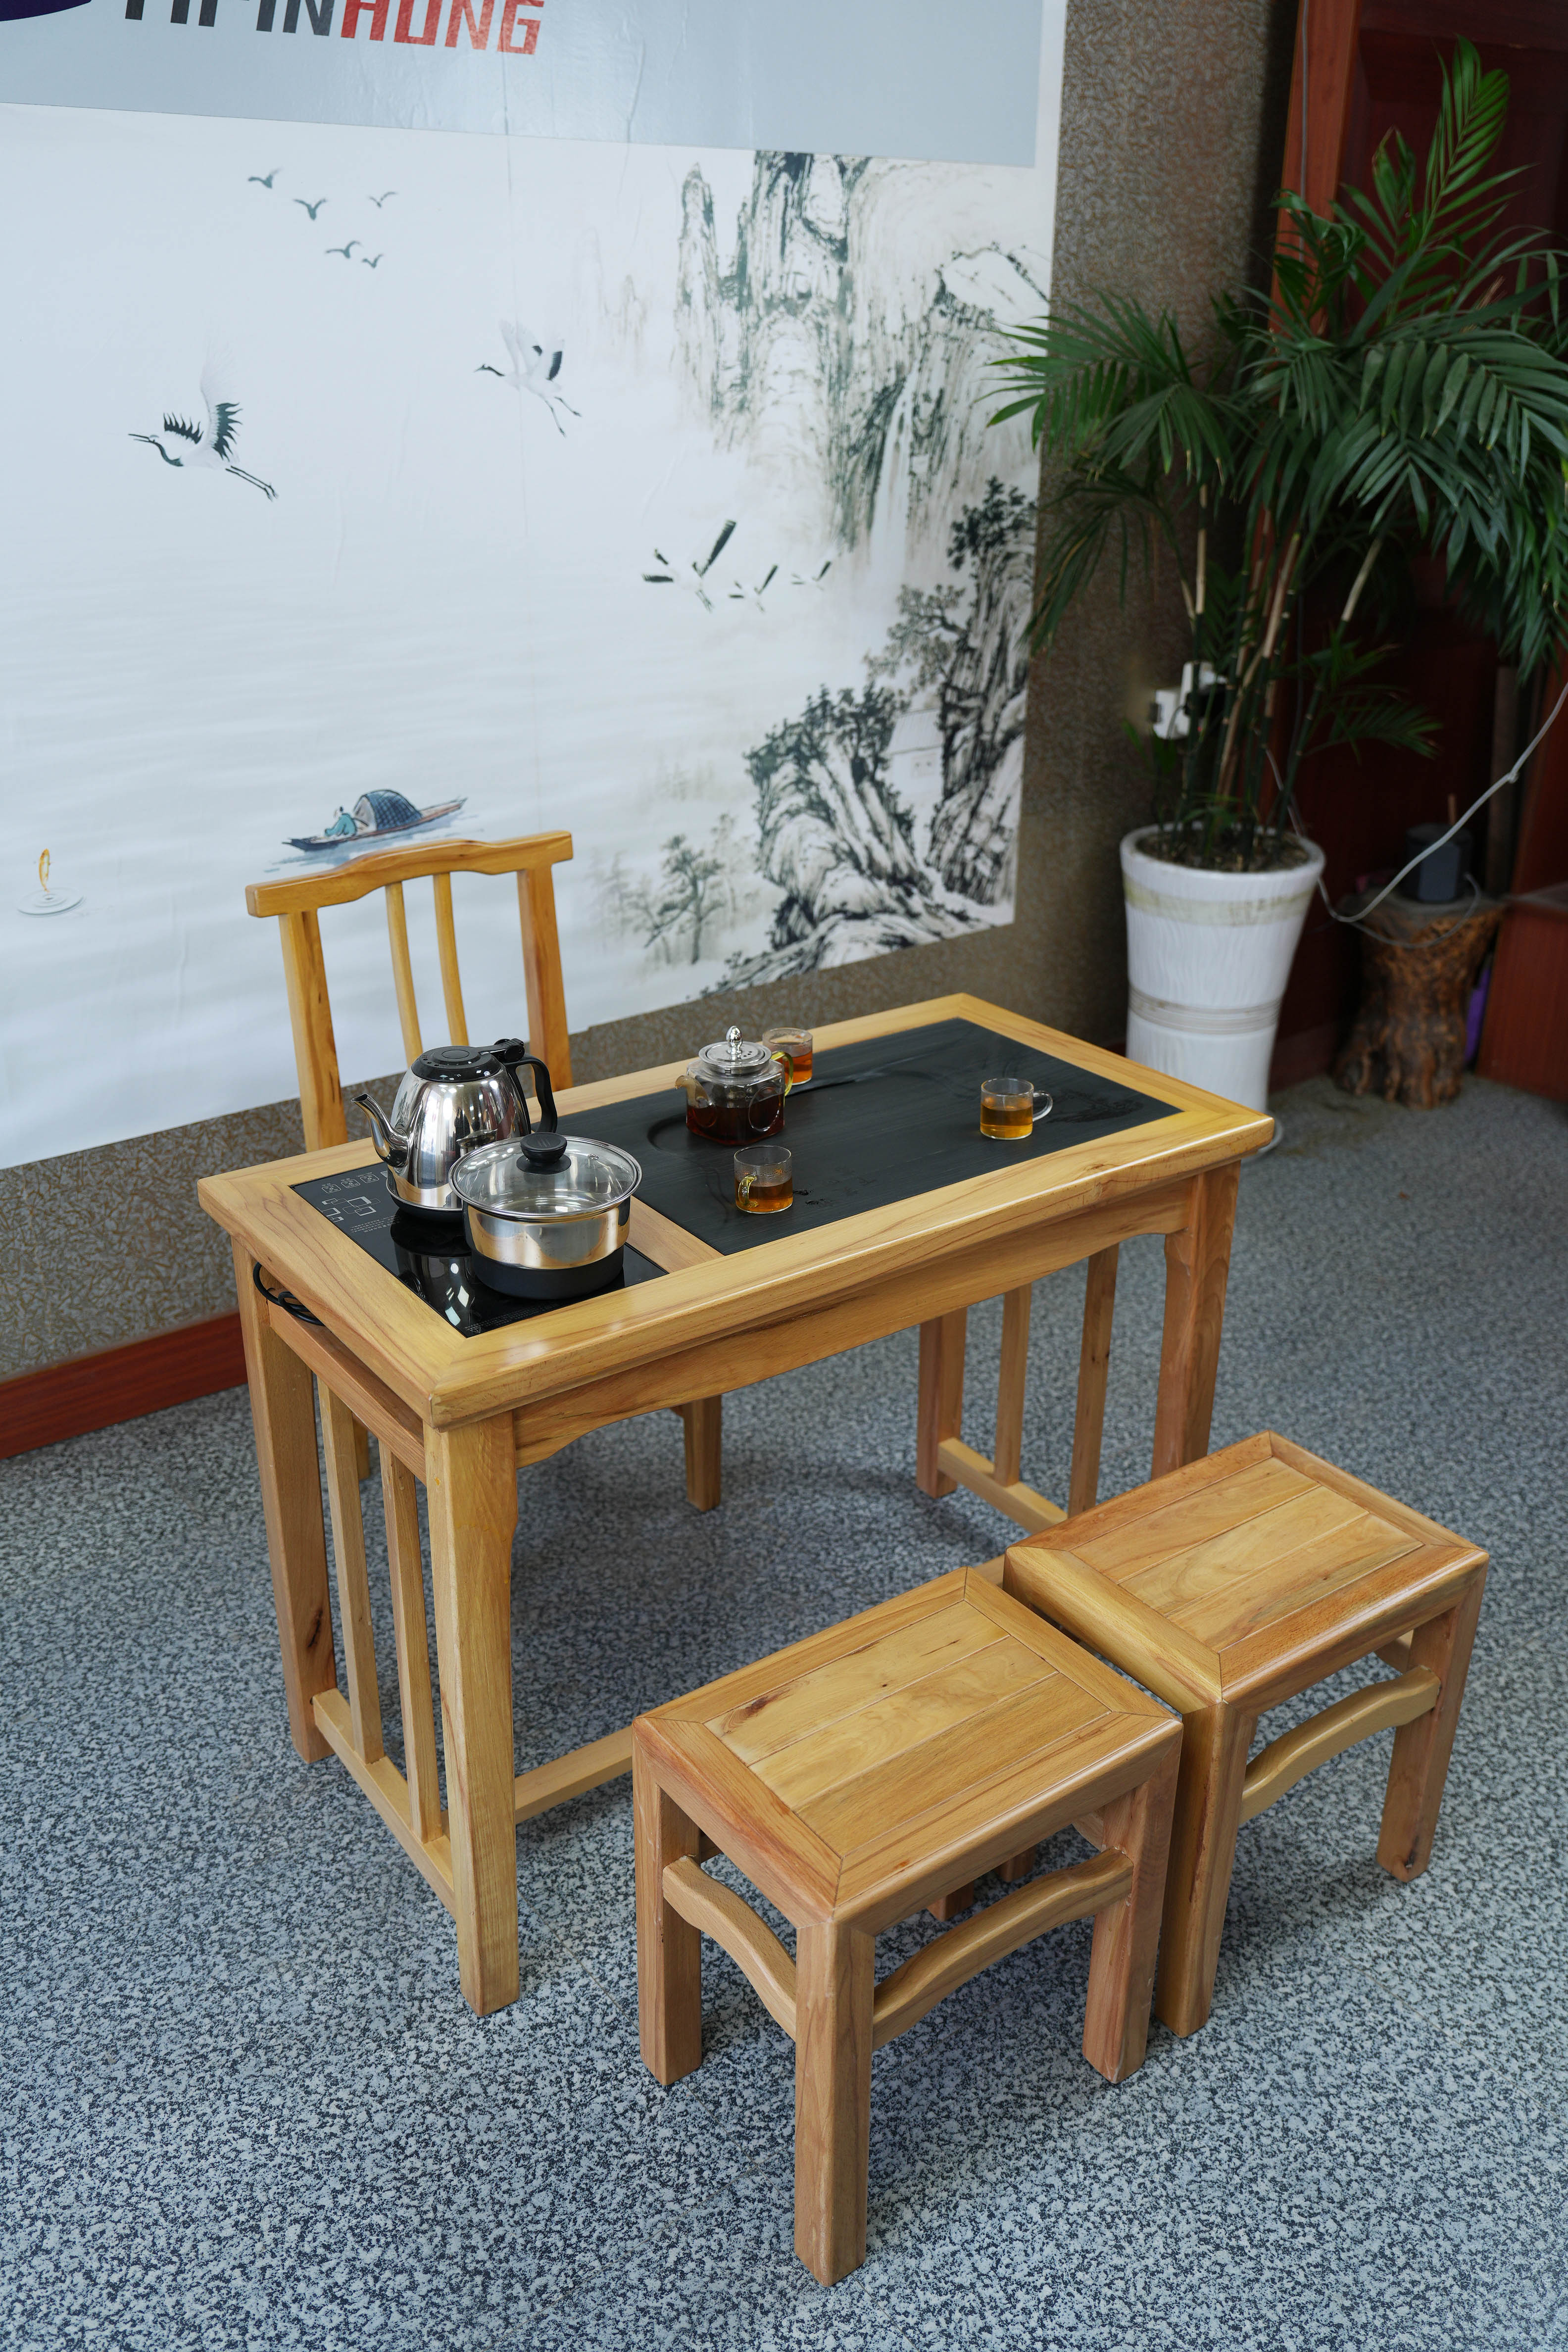 新品榉木实木家用阳台茶桌椅组合泡茶功夫小茶几家用烧水泡茶一体